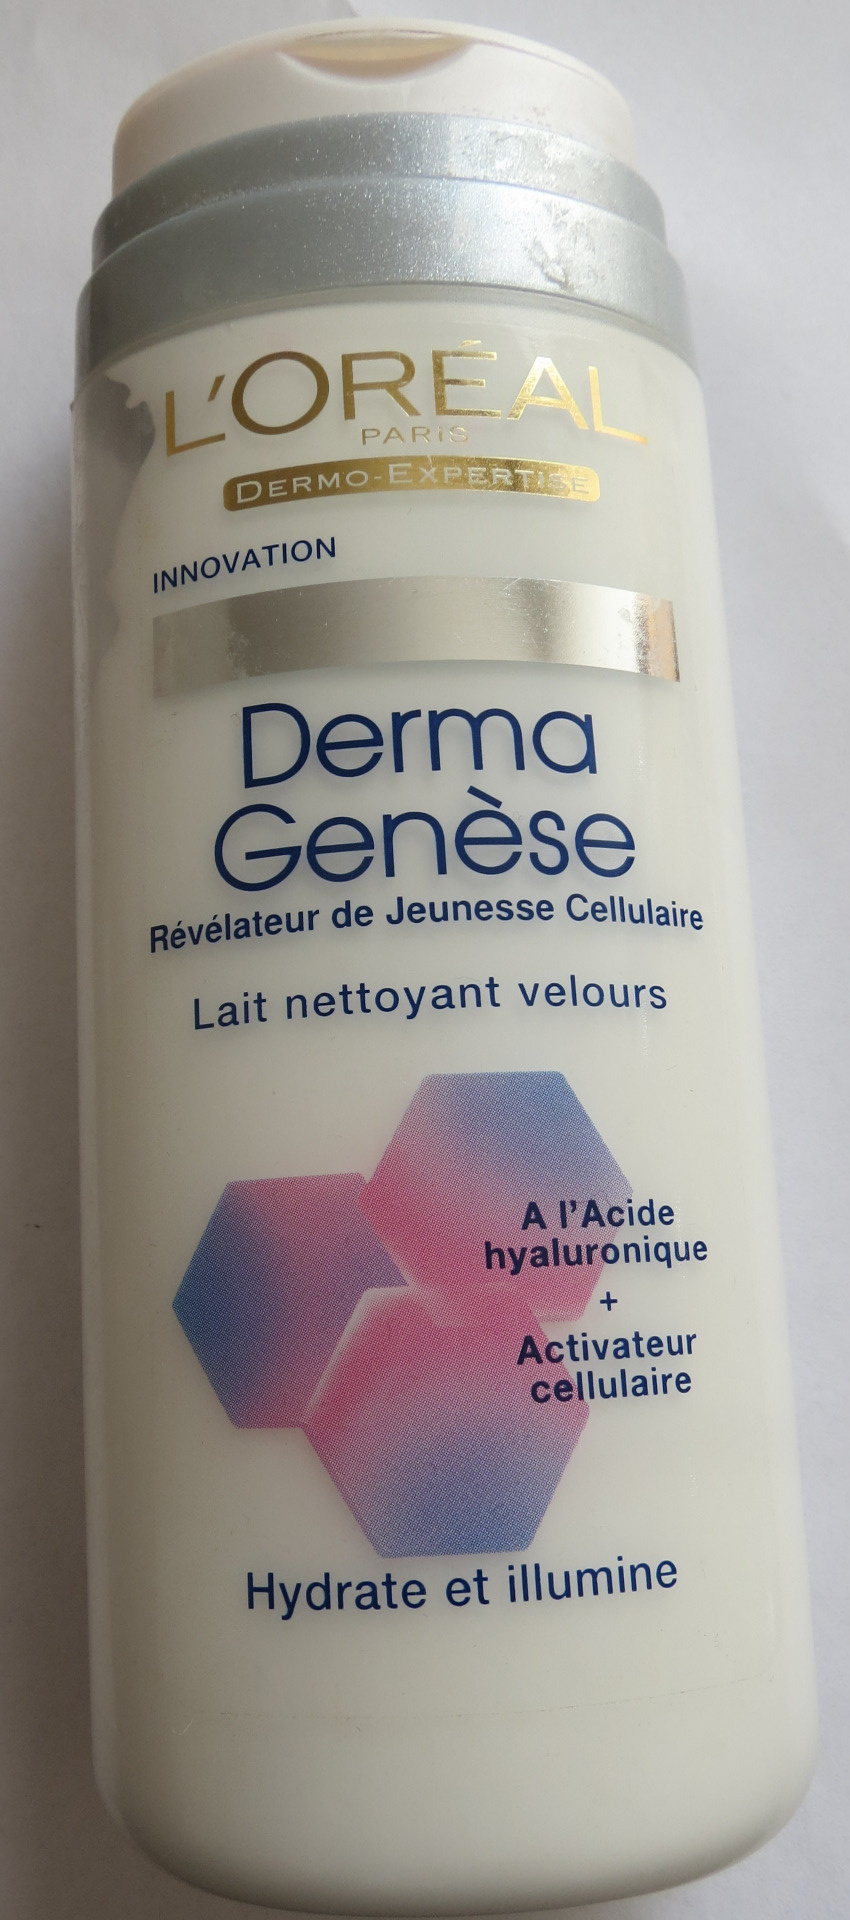 Derma genèse - Révélateur de jeunesse cellulaire - Lait nettoyant velours - Product - fr